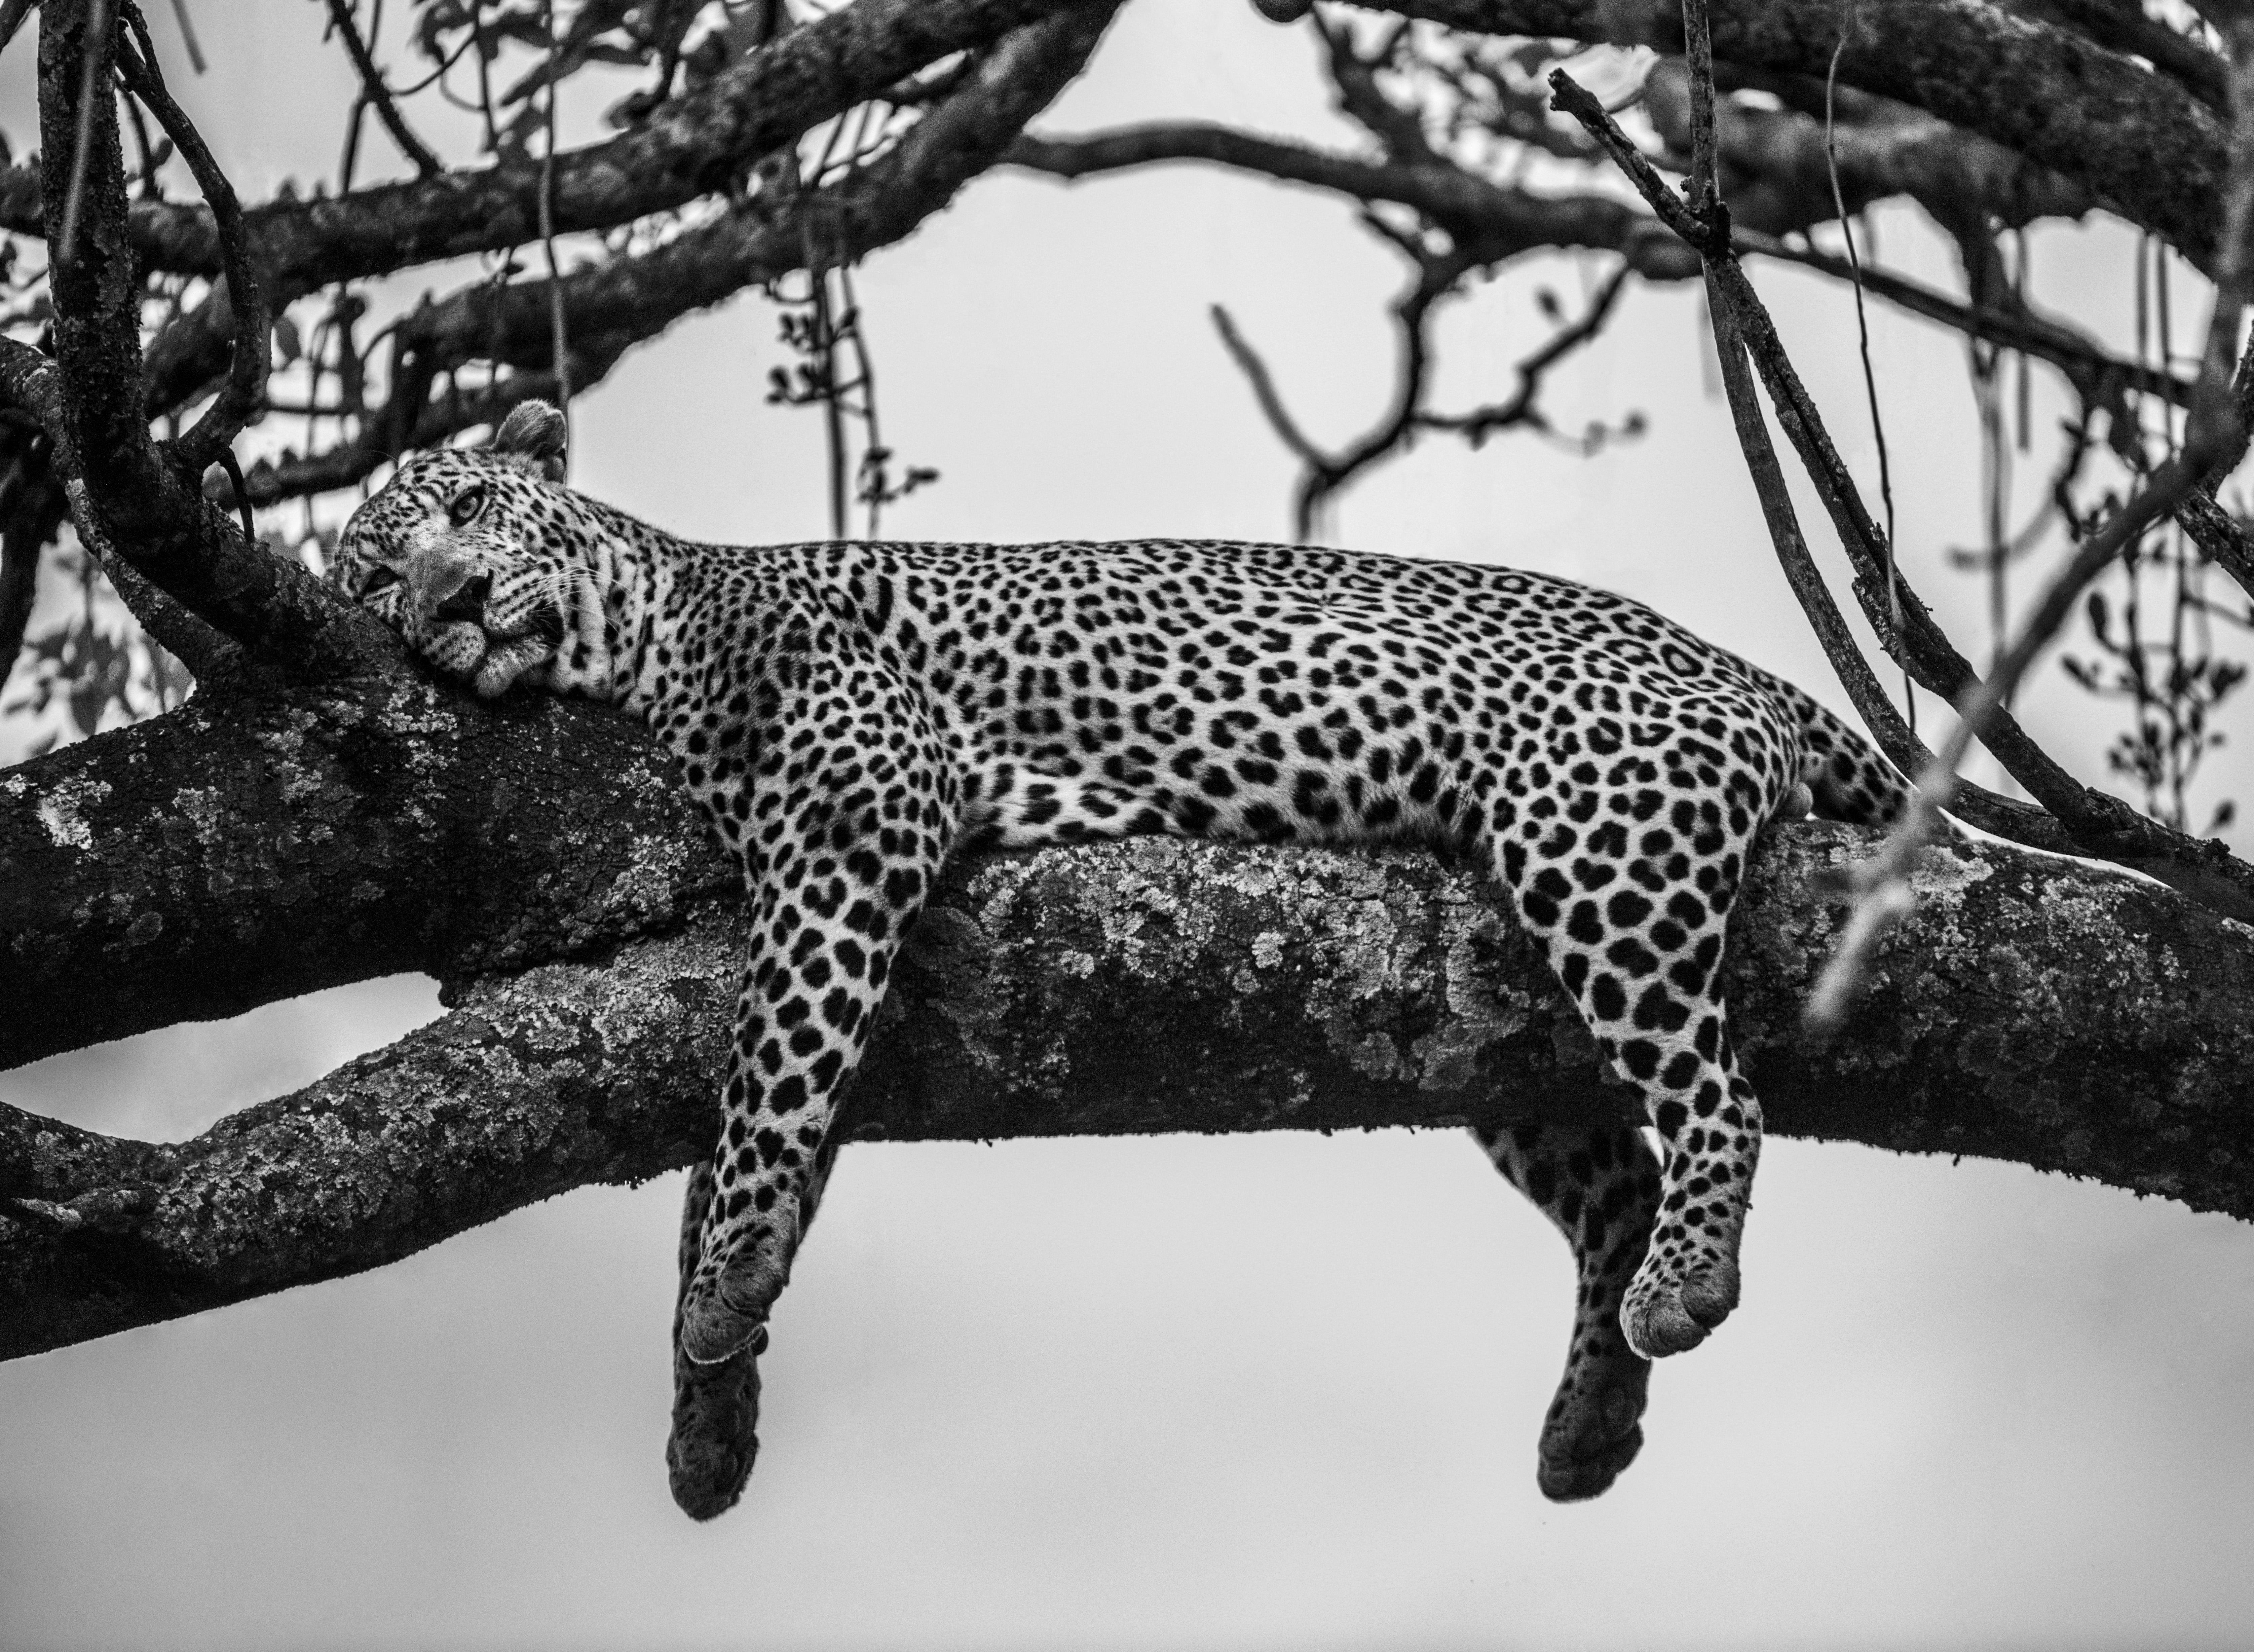 "Einen Leoparden zu beobachten, der anmutig in einem Baum liegt und seine Beine von einem Ast baumeln lässt, war ein Moment, den ich seit meinem ersten Besuch in Kenia unbedingt erleben wollte. Bei diesem ersten Besuch verbrachte ich einige Nächte